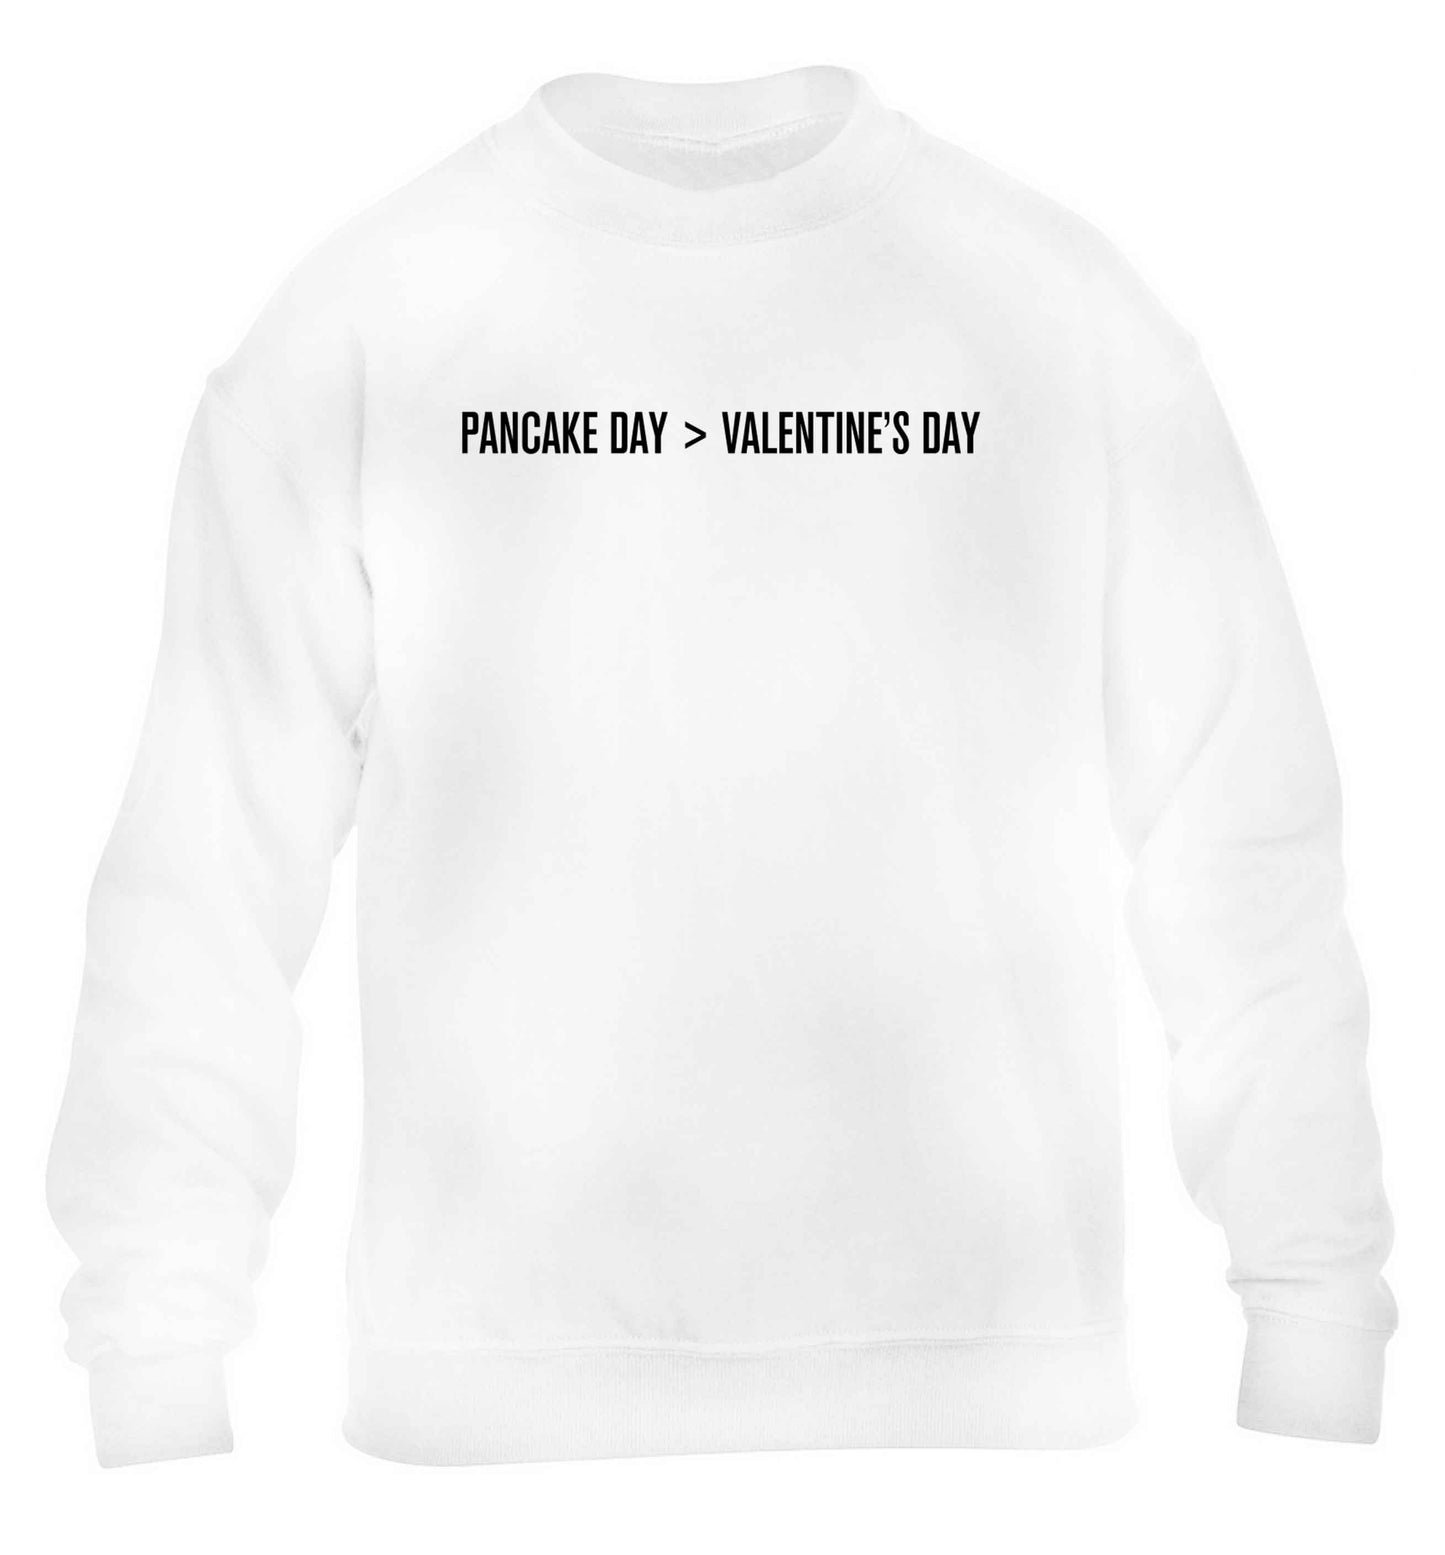 Pancake day > valentines day children's white sweater 12-13 Years